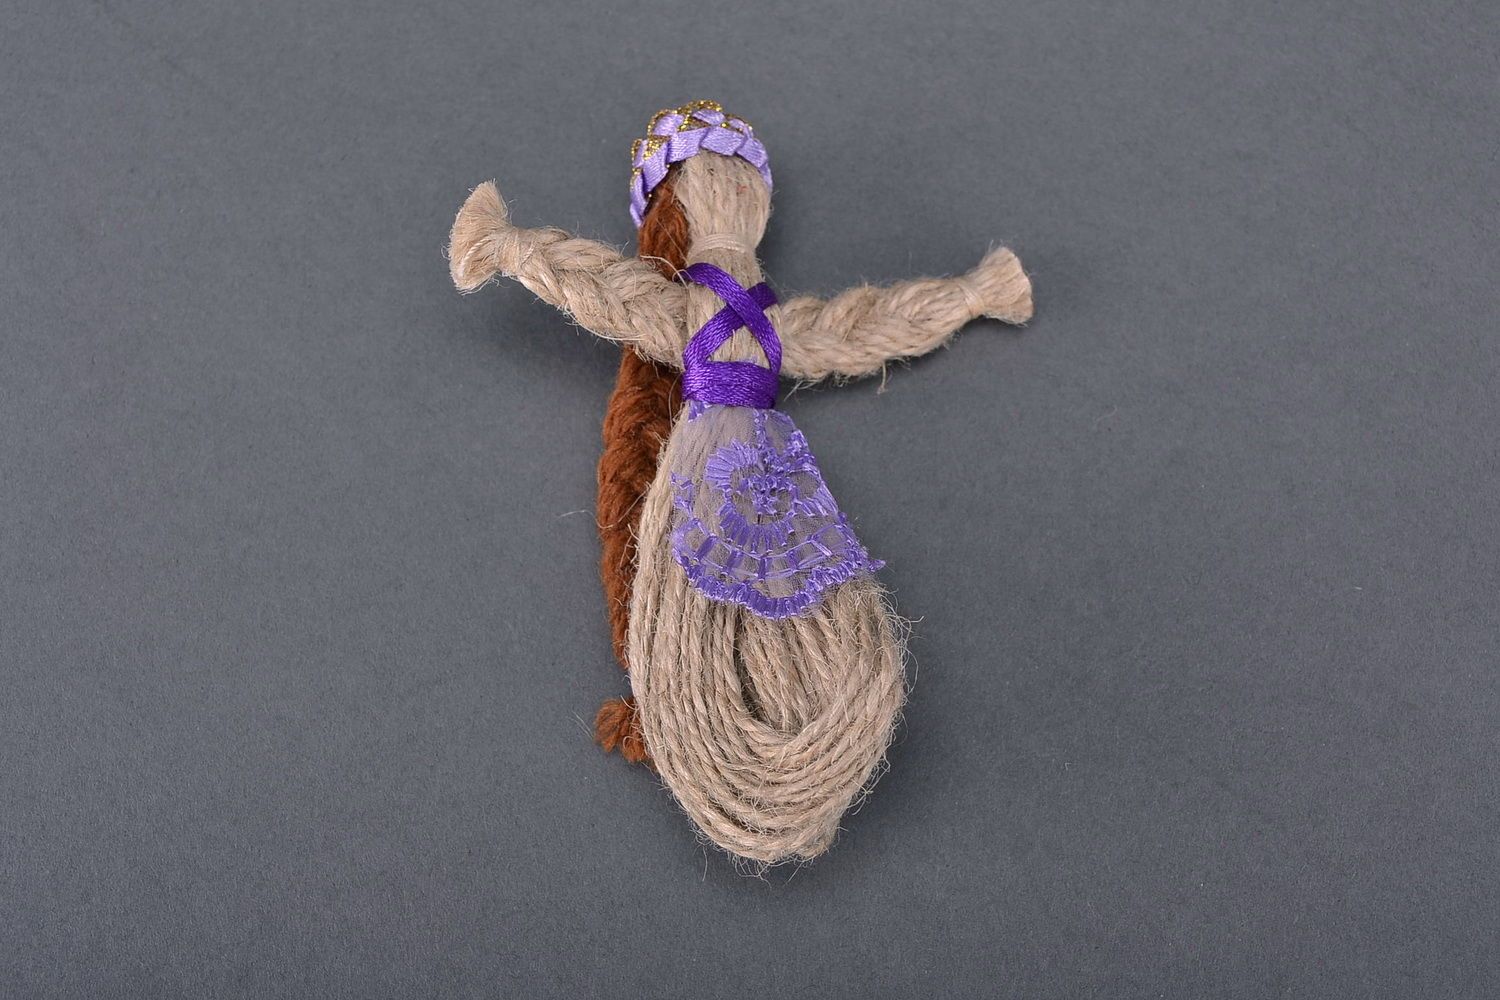 Bambola etnica di stoffa fatta a mano amuleto talismano giocattolo slavo foto 2